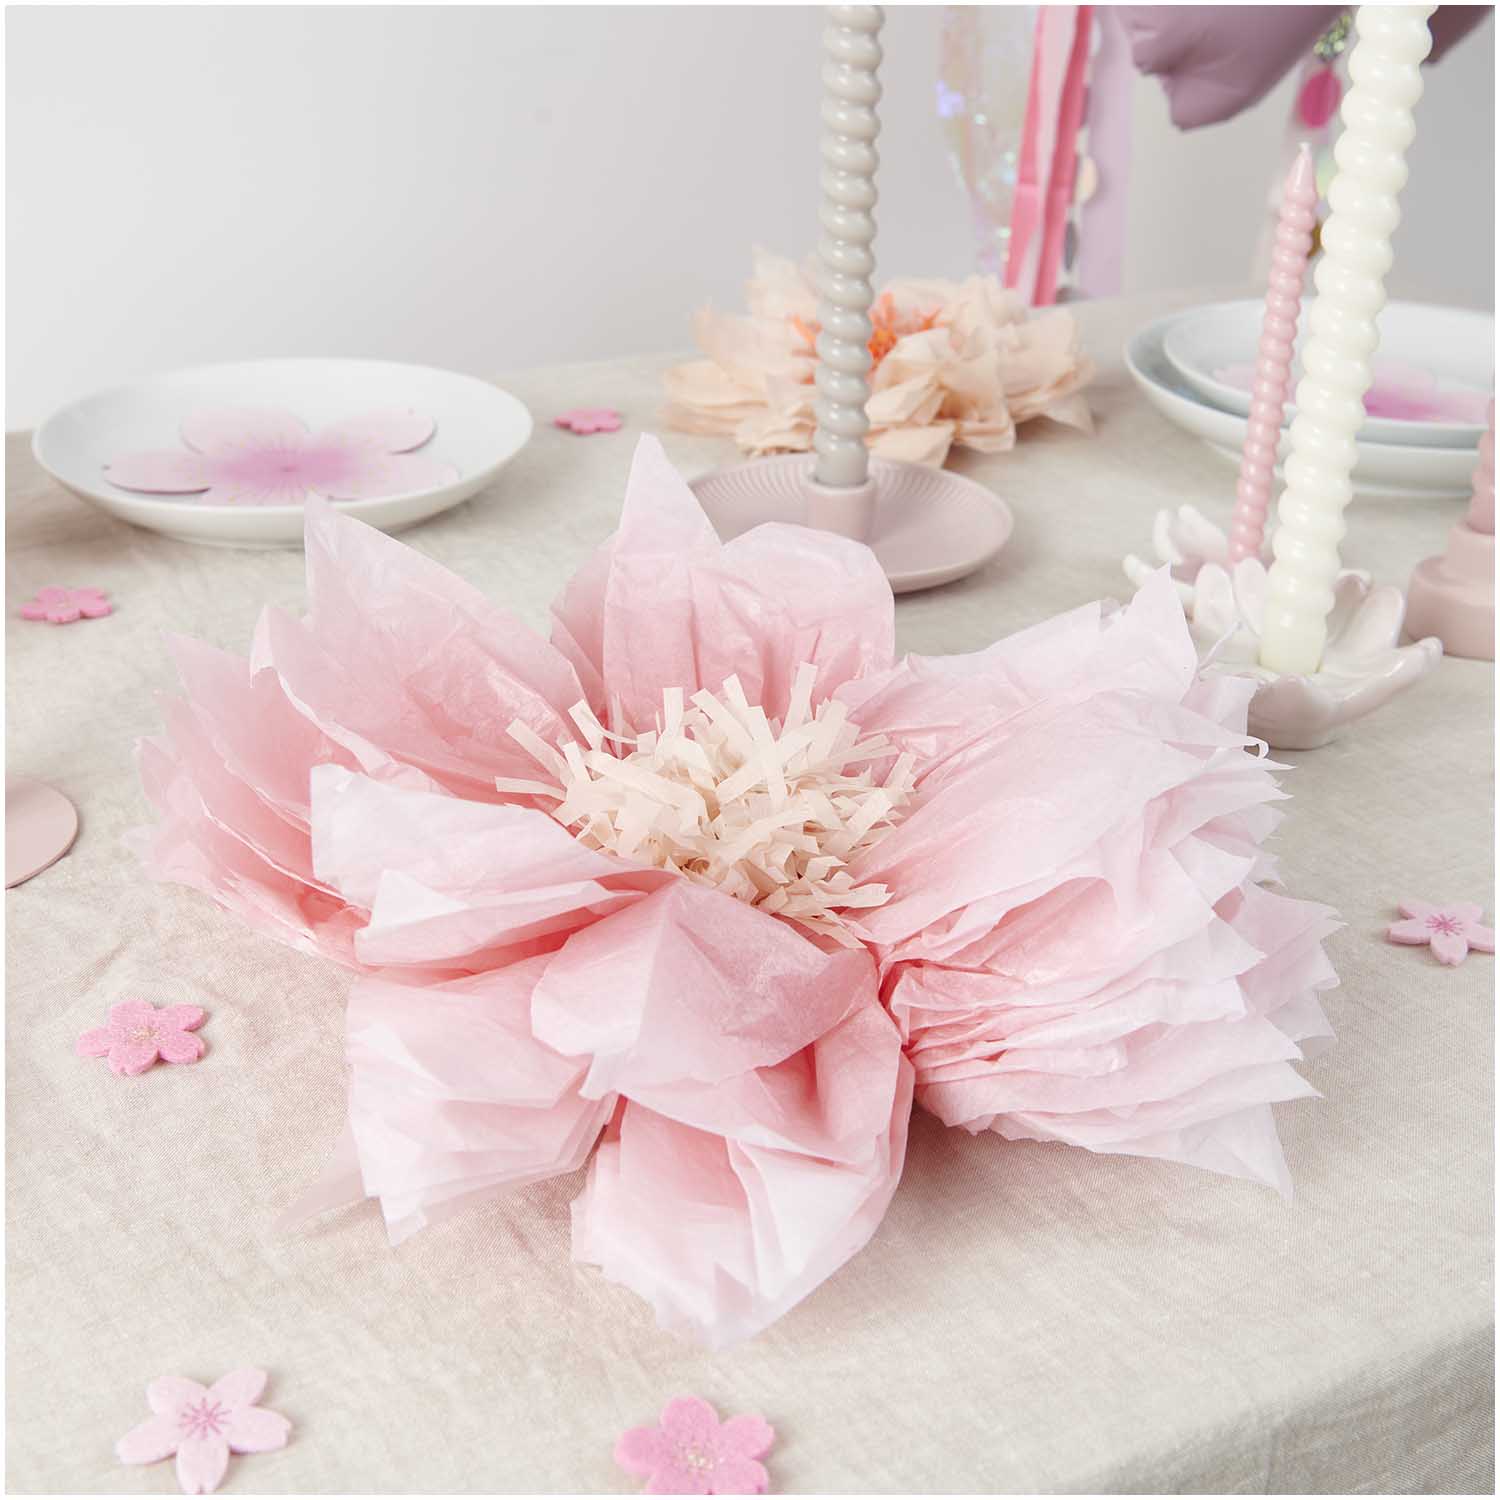 Tissue kersen bloemen zacht roze zacht orange decoratie feest verjaardag